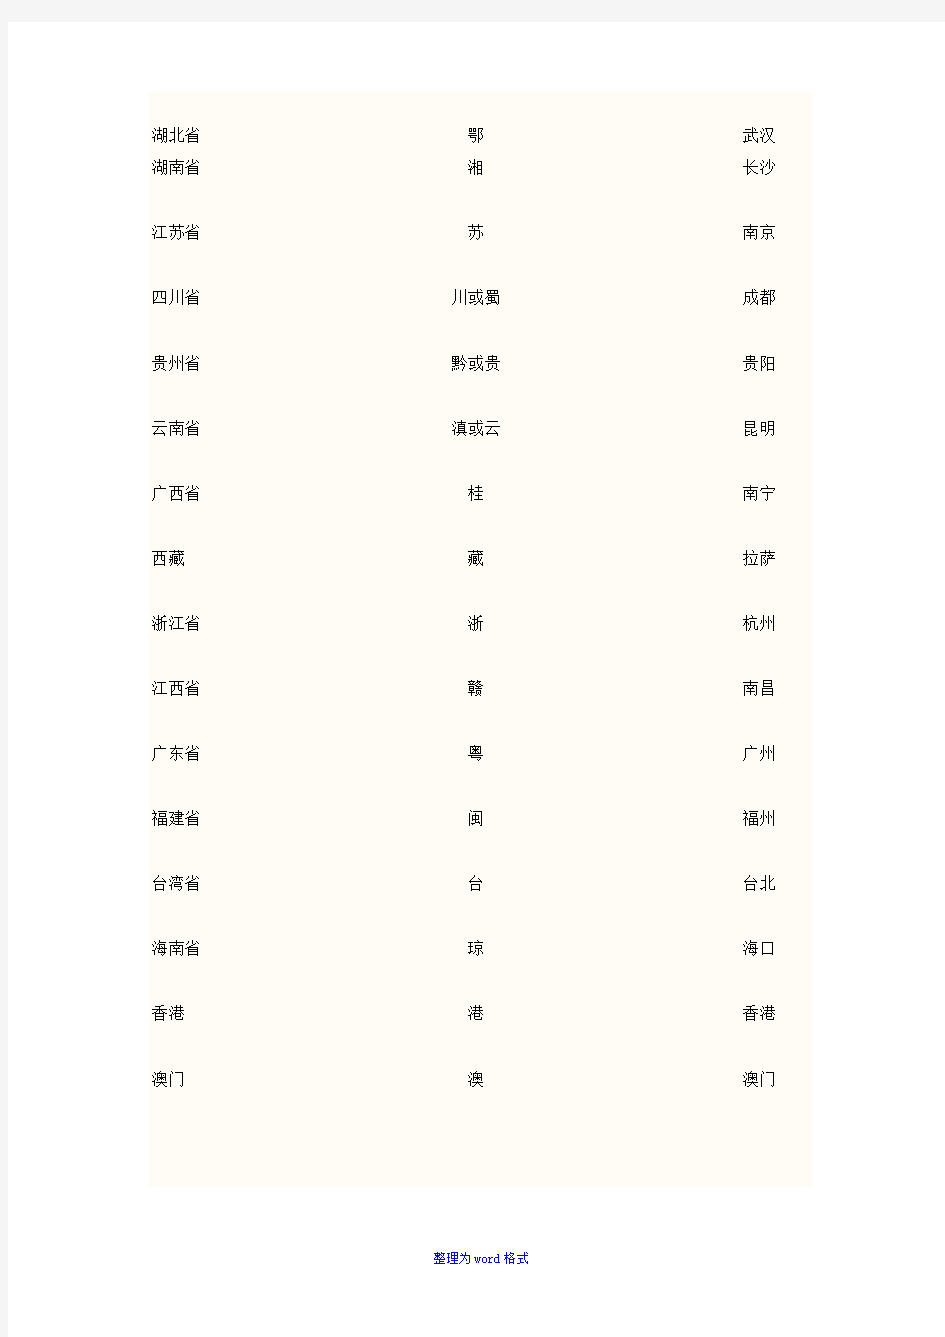 中国34个省级行政区名称,带图-简称及行政中心Word版